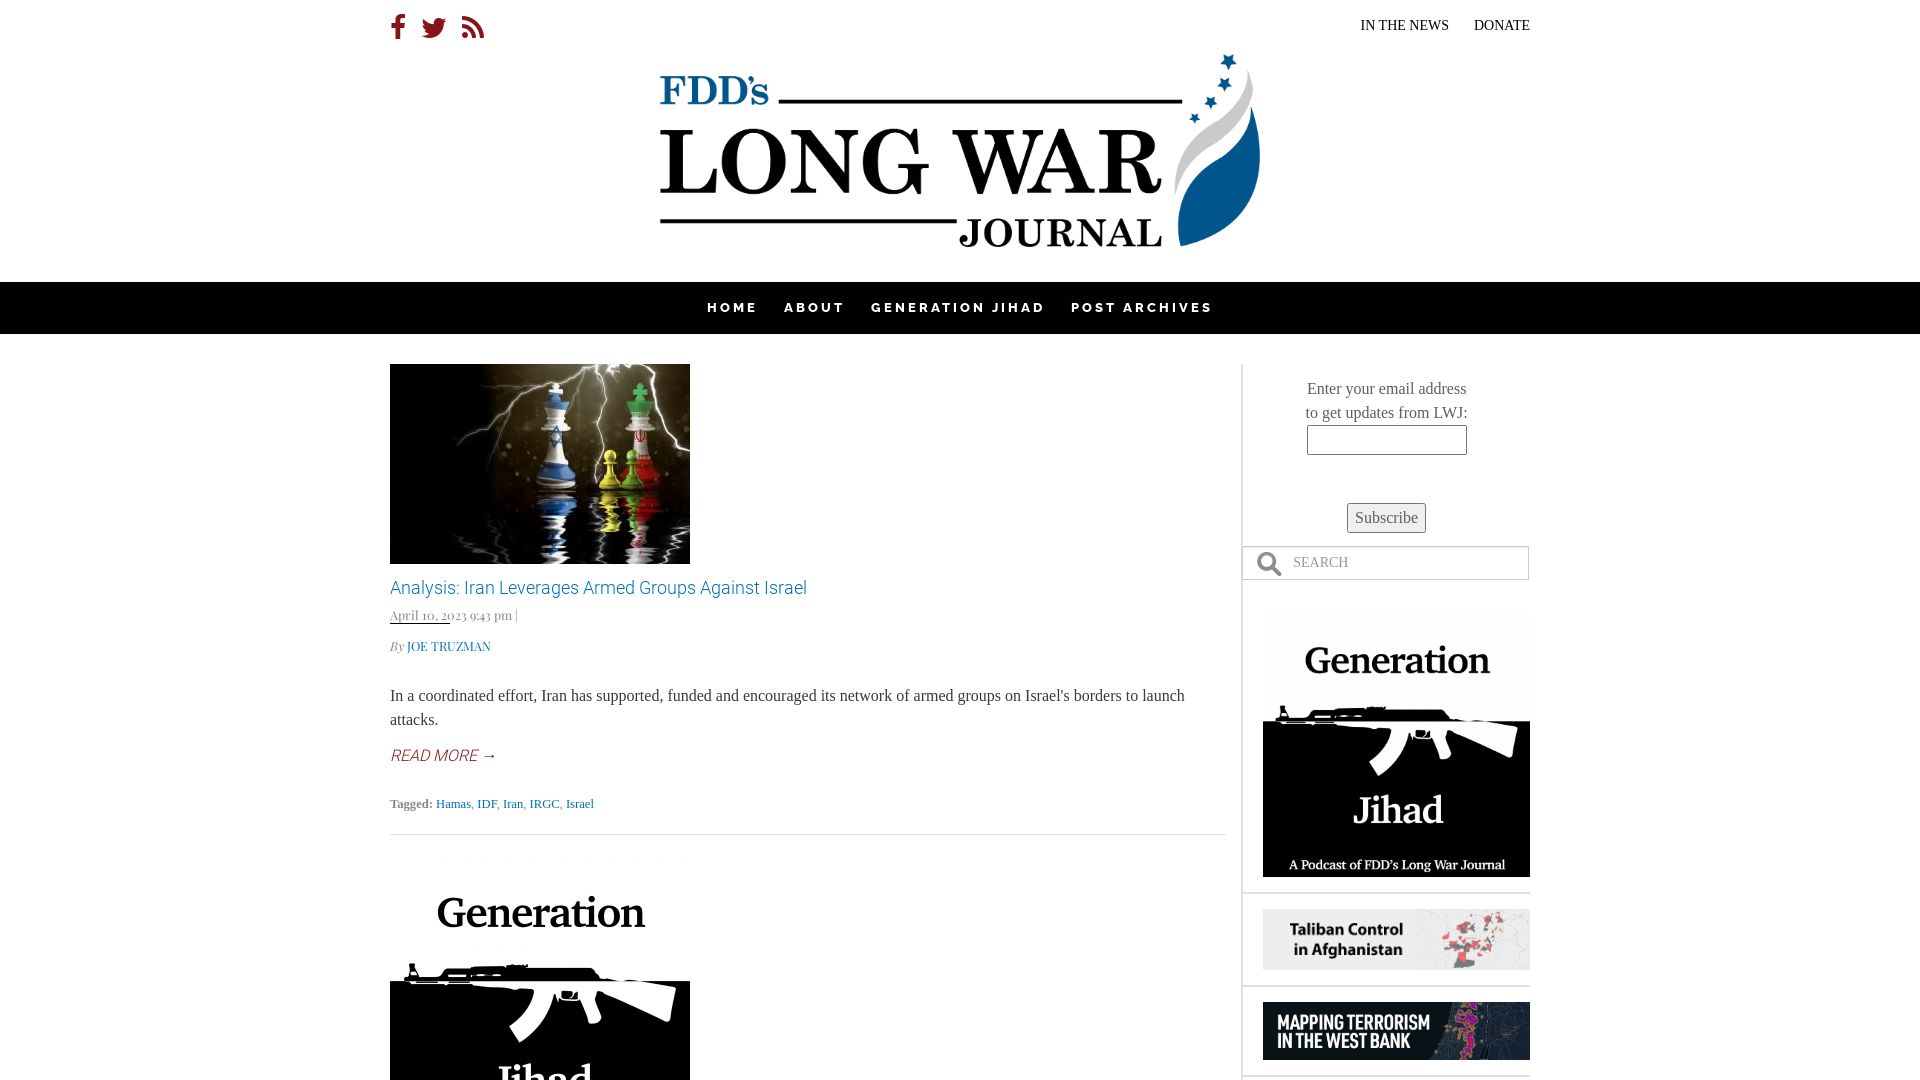 Website status longwarjournal.org is   ONLINE